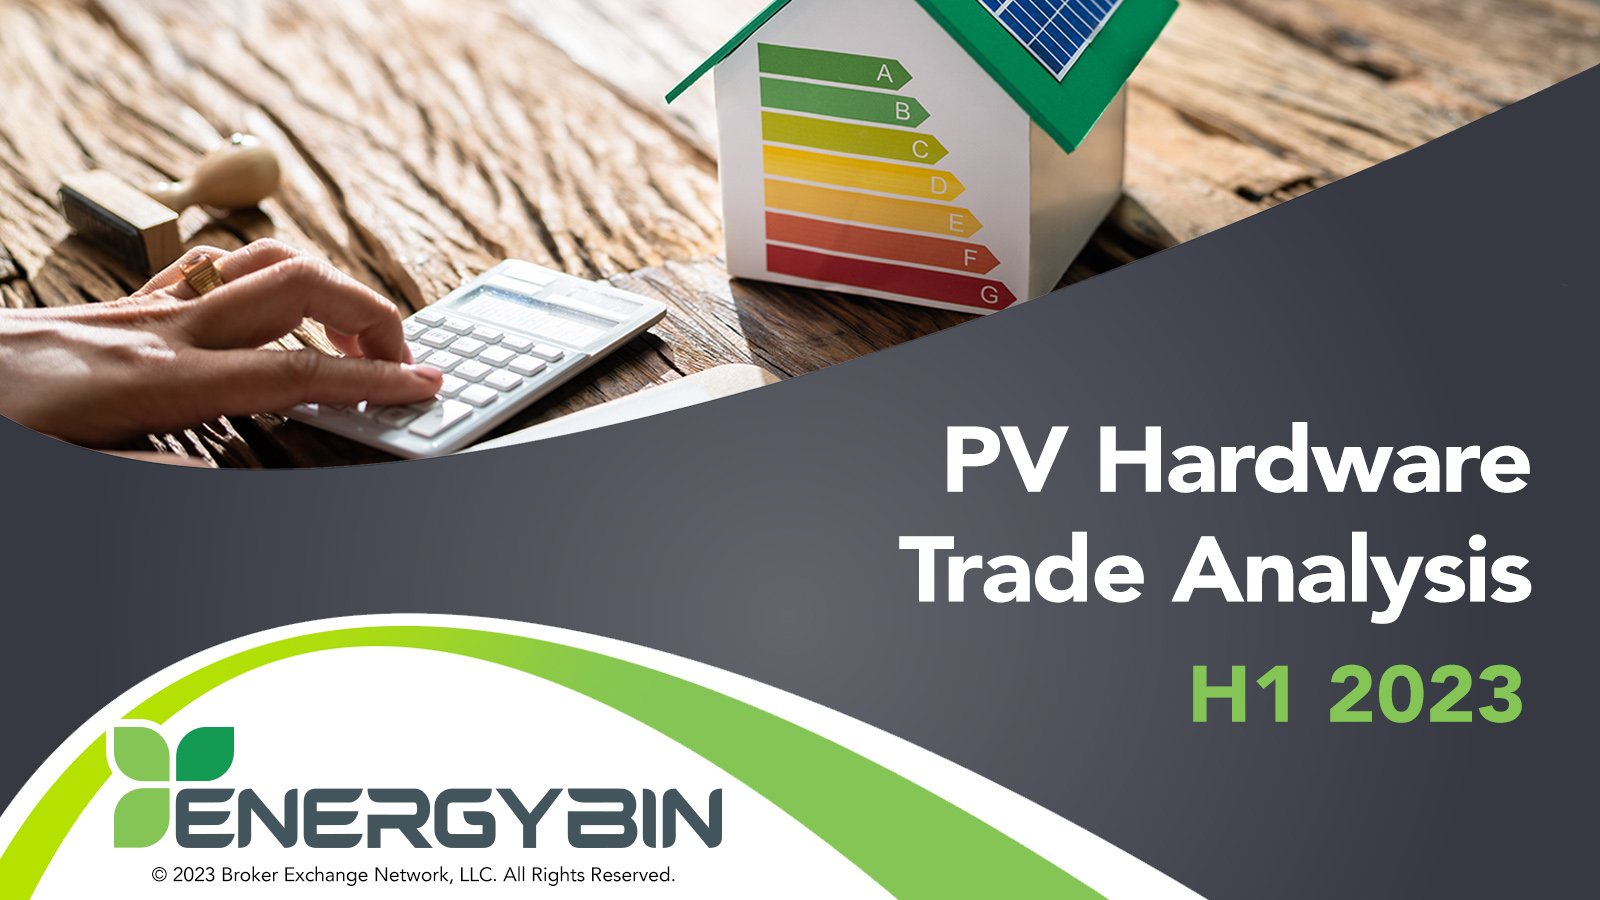 EnergyBin PV Hardware Trade Analysis H1 2023